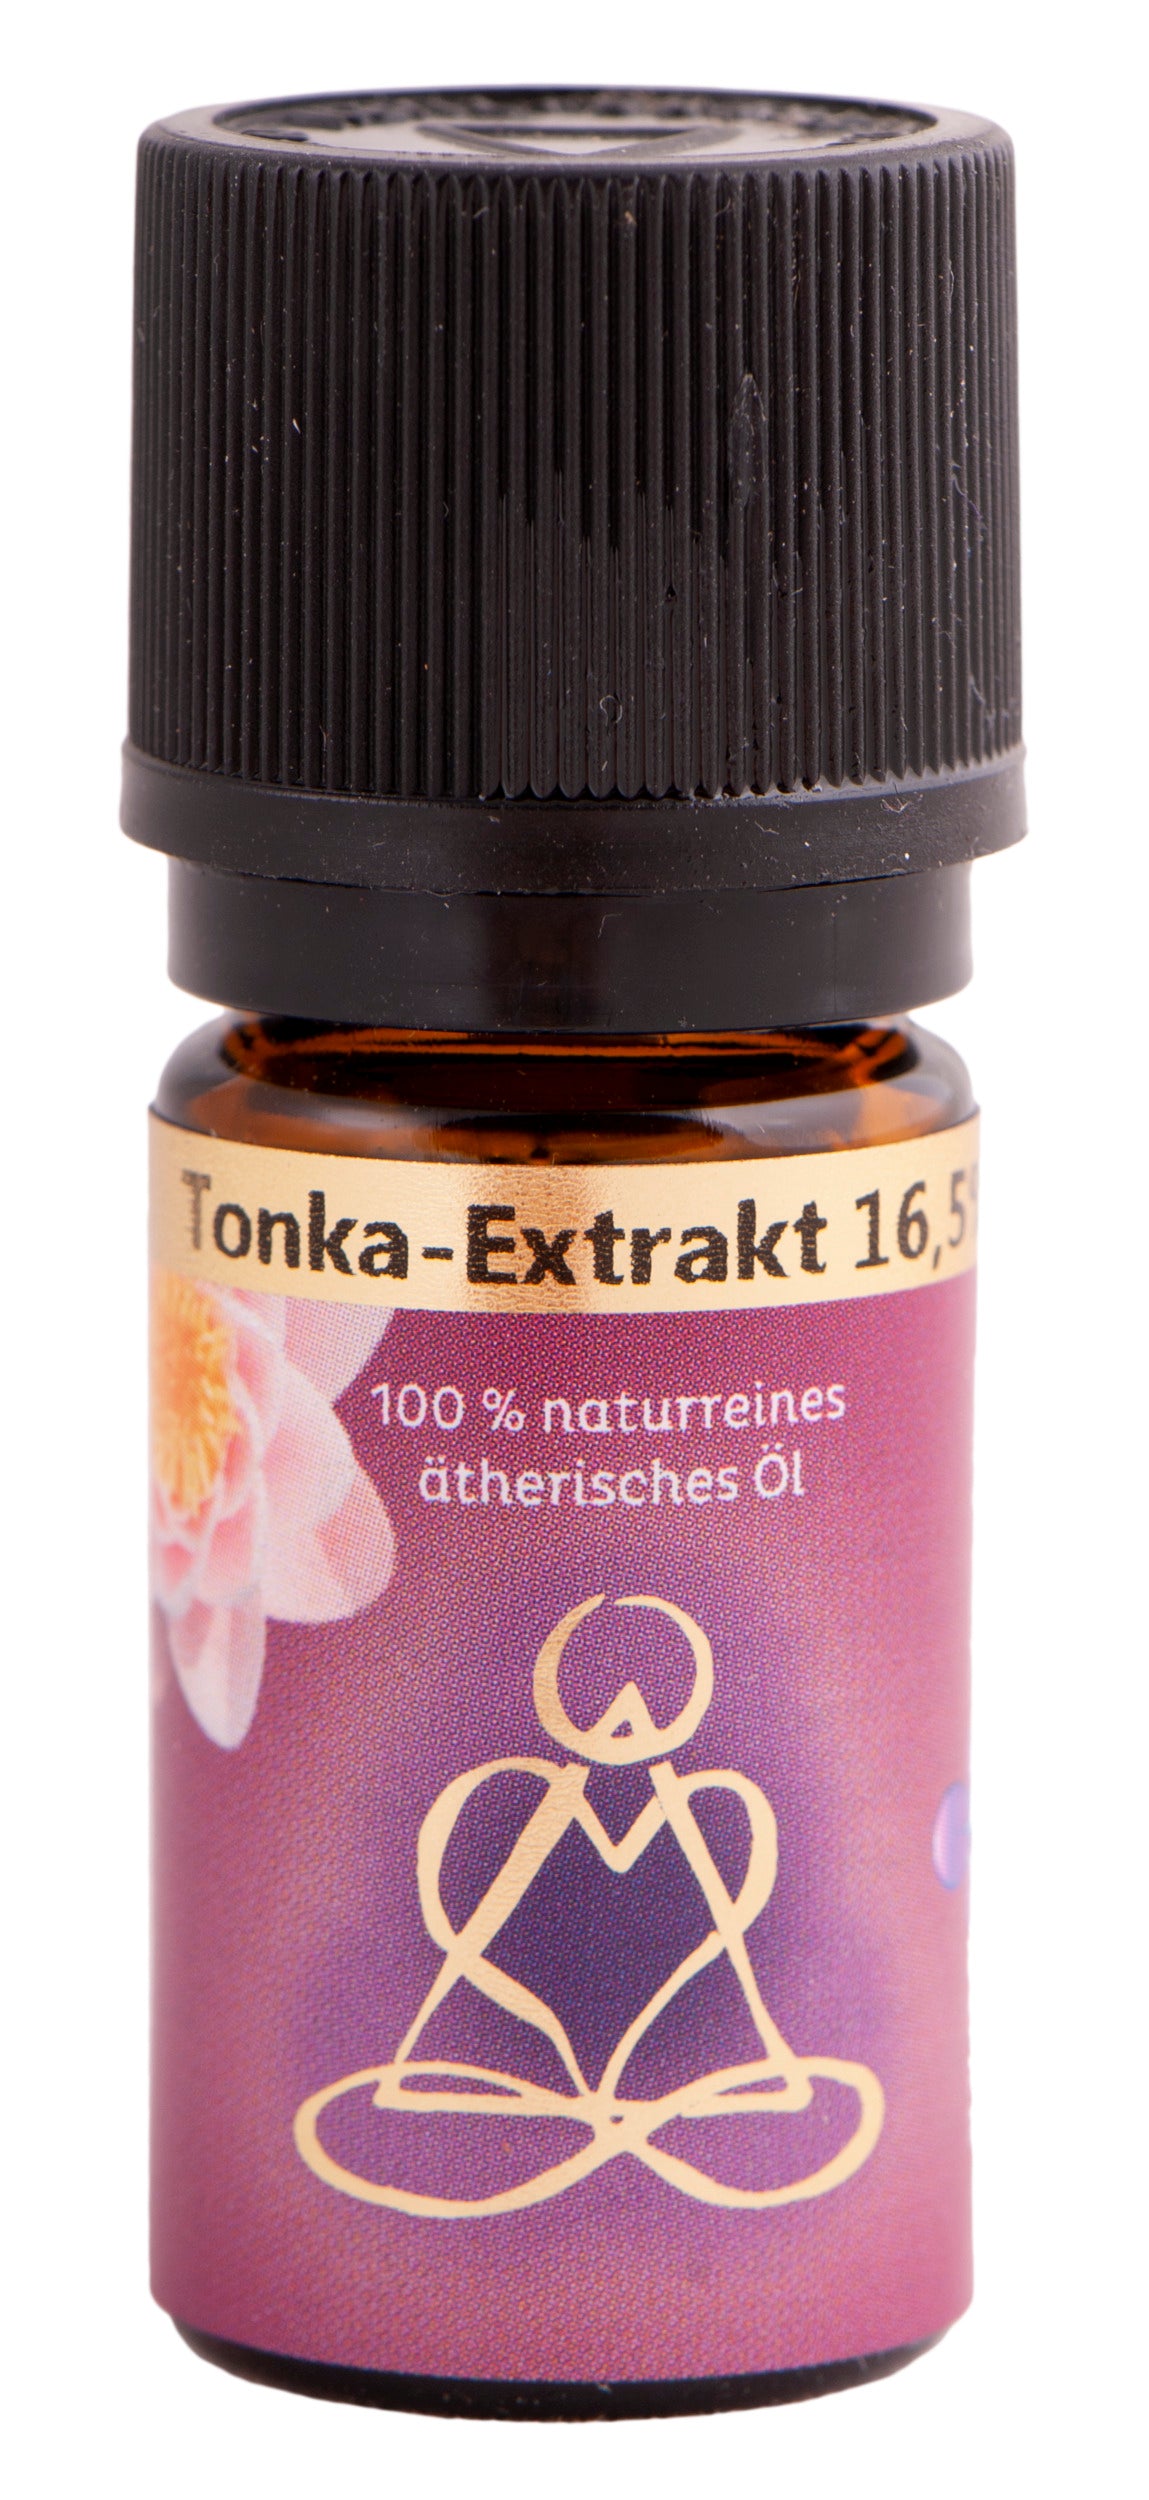 Holy Scents - Tonka Extrakt 16,5% - Ätherisches Öl 5 ml